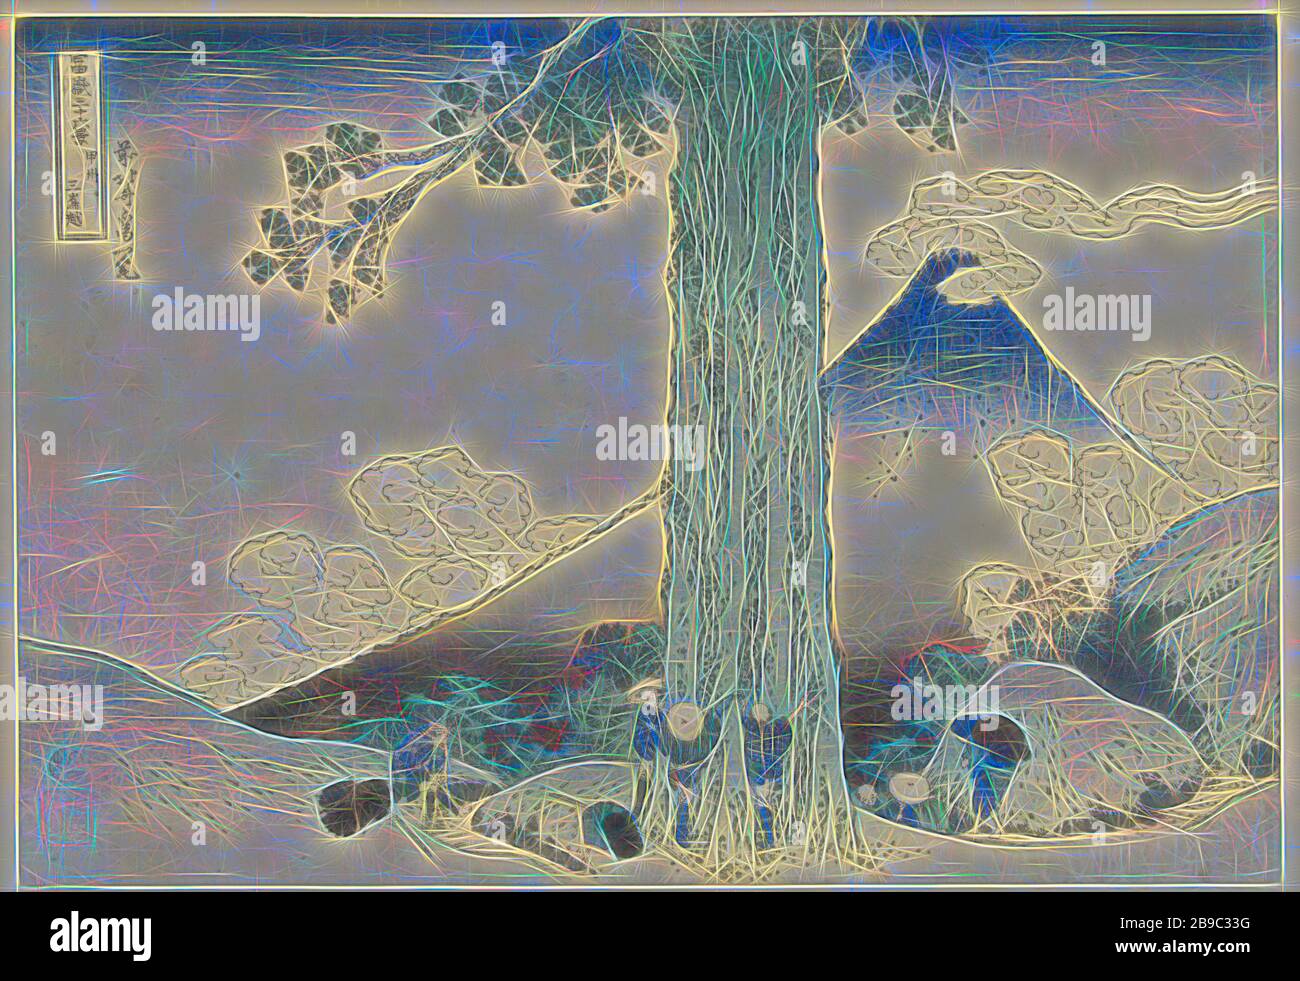 Mishima-Gebirgspass in Kai Koshu, Provinz Mishimagoe (Titel auf Objekt) 36 Ansichten des Fuji (Serientitel) Fuji Sanjurokkei (Serientitel auf Objekt), Blick auf einen Gebirgspass mit Reisenden und die Spitze des Fuji im Hintergrund, Im Vordergrund ein großer Baum, in dem drei Reisende die Größe messen, Fuji, der Berg, Katsushika Hokusai (erwähnt am Objekt), 18-18-33-10, Papier, Farbholzschnitt, h 368 mm × w 254 mm, neu von Gibon vorgestellt, Design von warmem, fröhlichem Leuchten von Helligkeit und Lichtstrahlen. Klassische Kunst mit moderner Note neu erfunden. Fotografie inspiriert von Futurismus, Embr Stockfoto